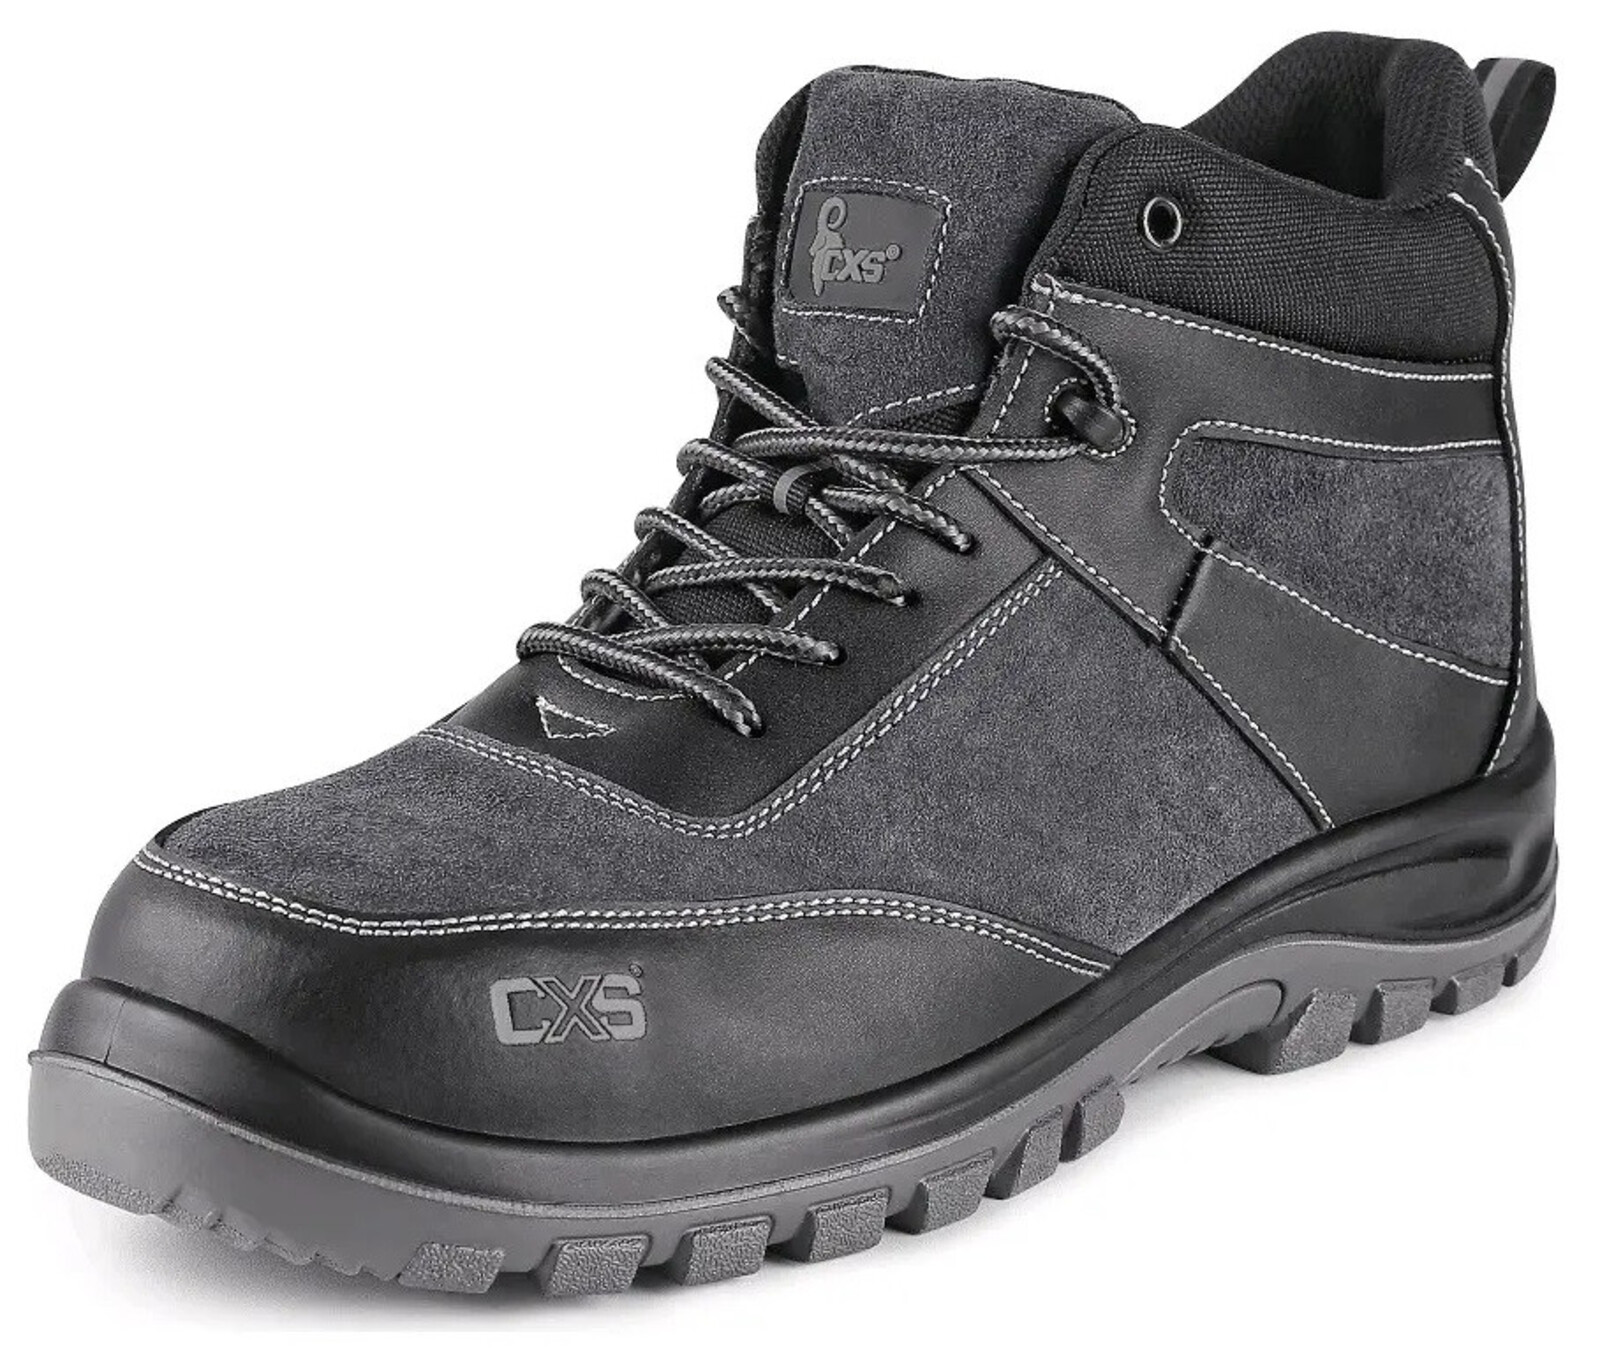 Bezpečnostná členková obuv CXS Profit Top S1P SRC - veľkosť: 41, farba: čierna/sivá